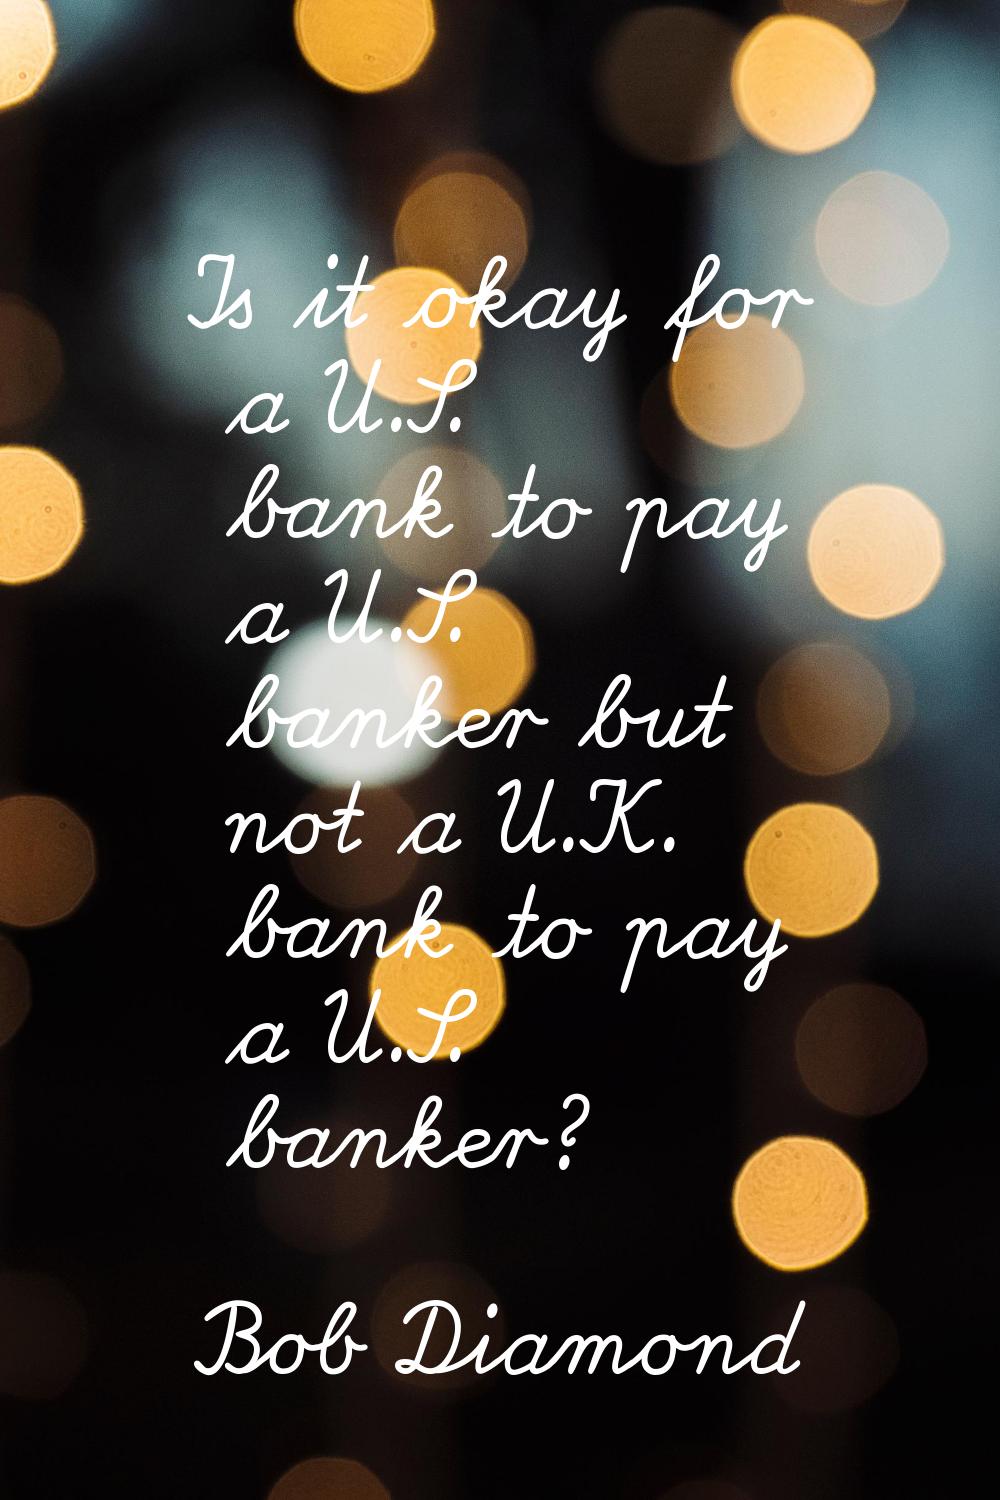 Is it okay for a U.S. bank to pay a U.S. banker but not a U.K. bank to pay a U.S. banker?